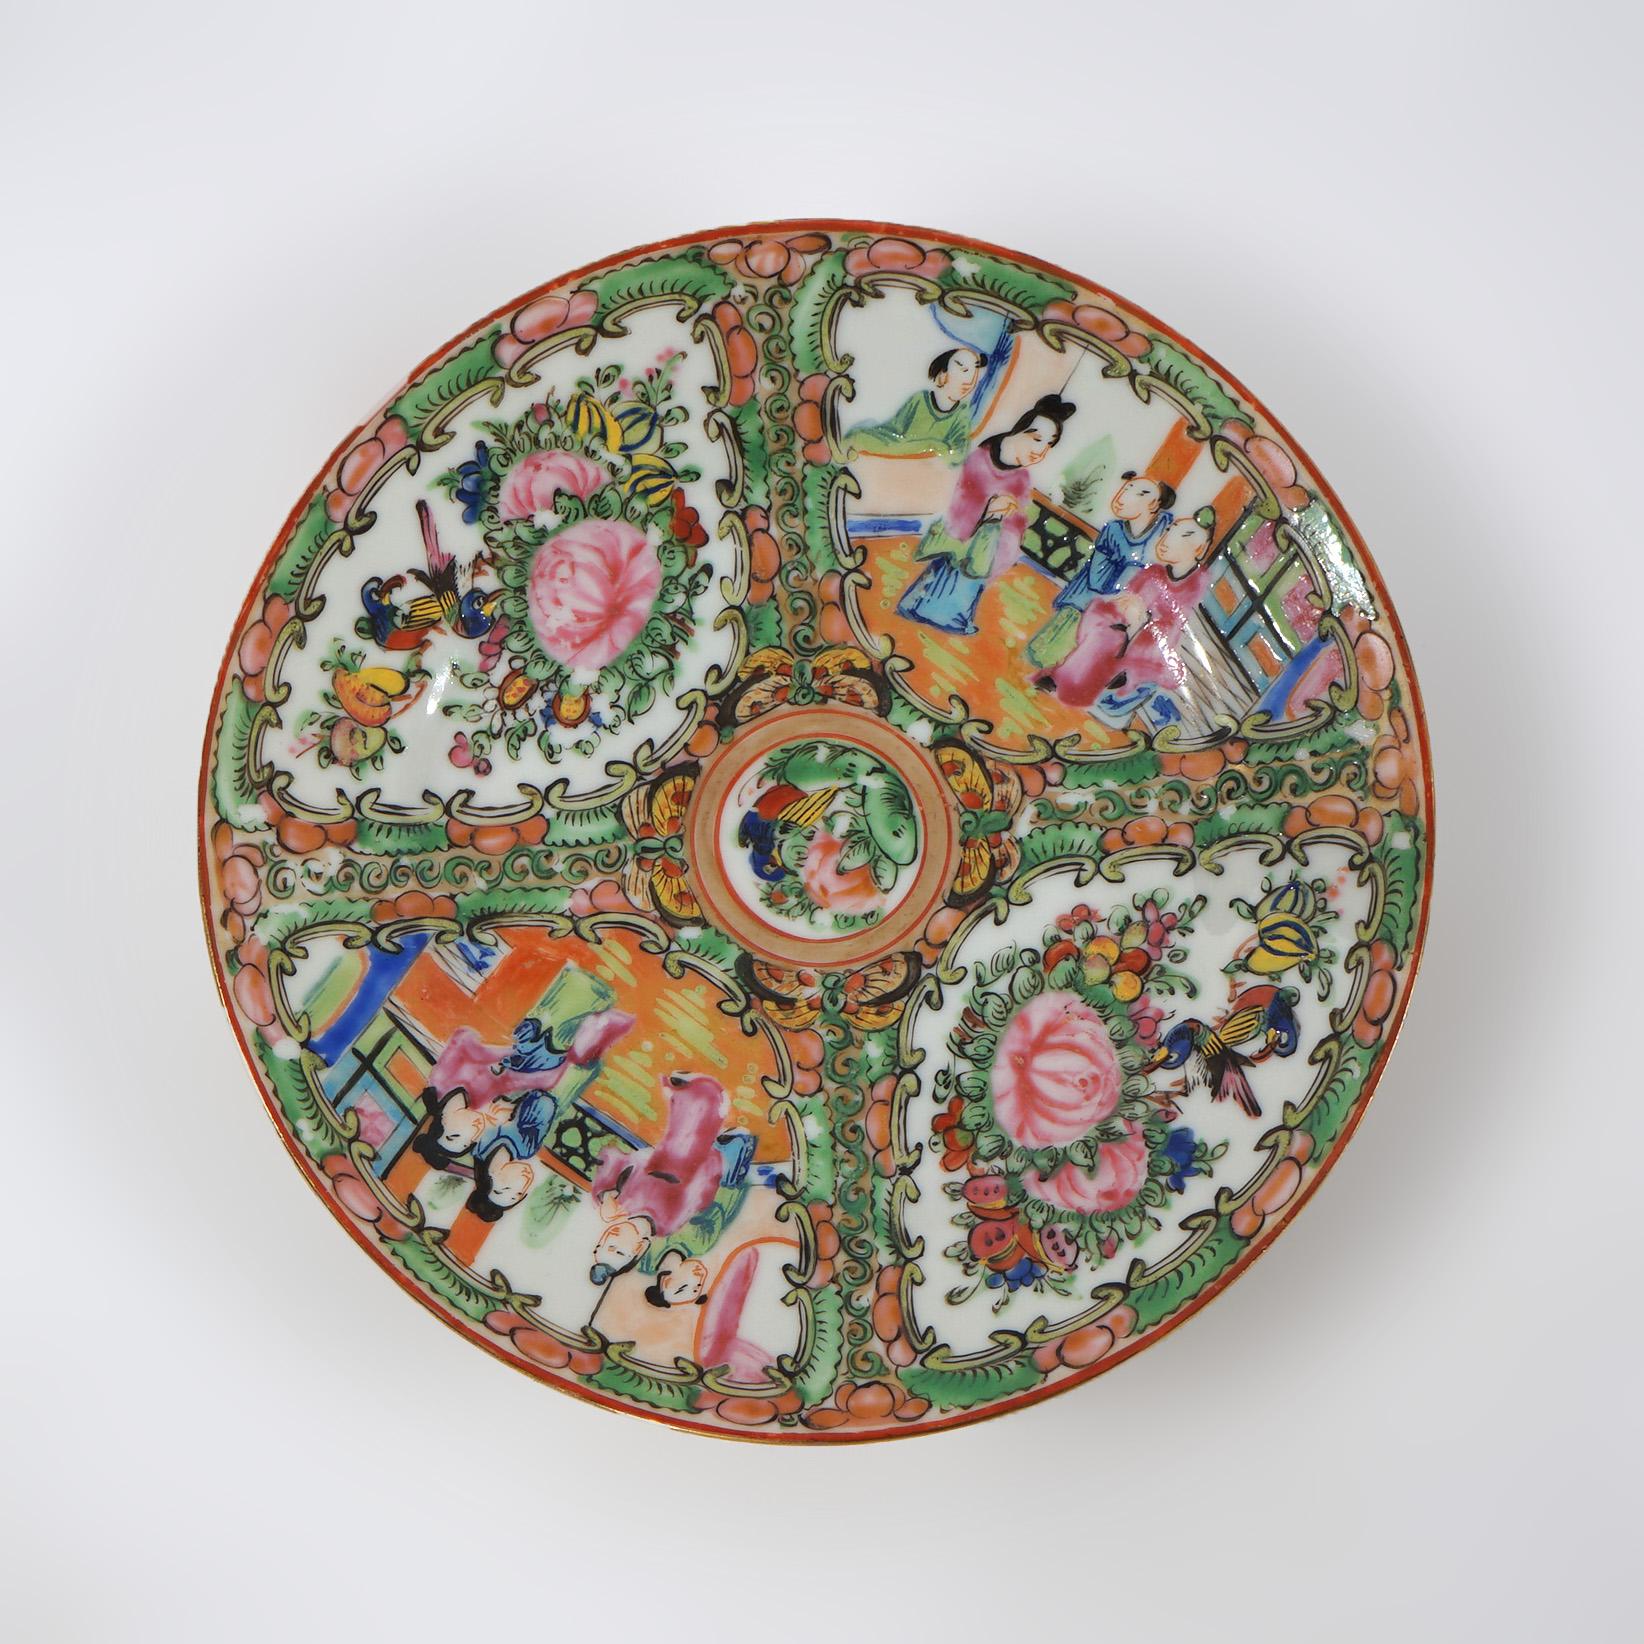 Antike chinesische Rose Medaillon Porzellanteller mit Reserven mit Gärten & Genre Szenen C1900

Maße - 1 